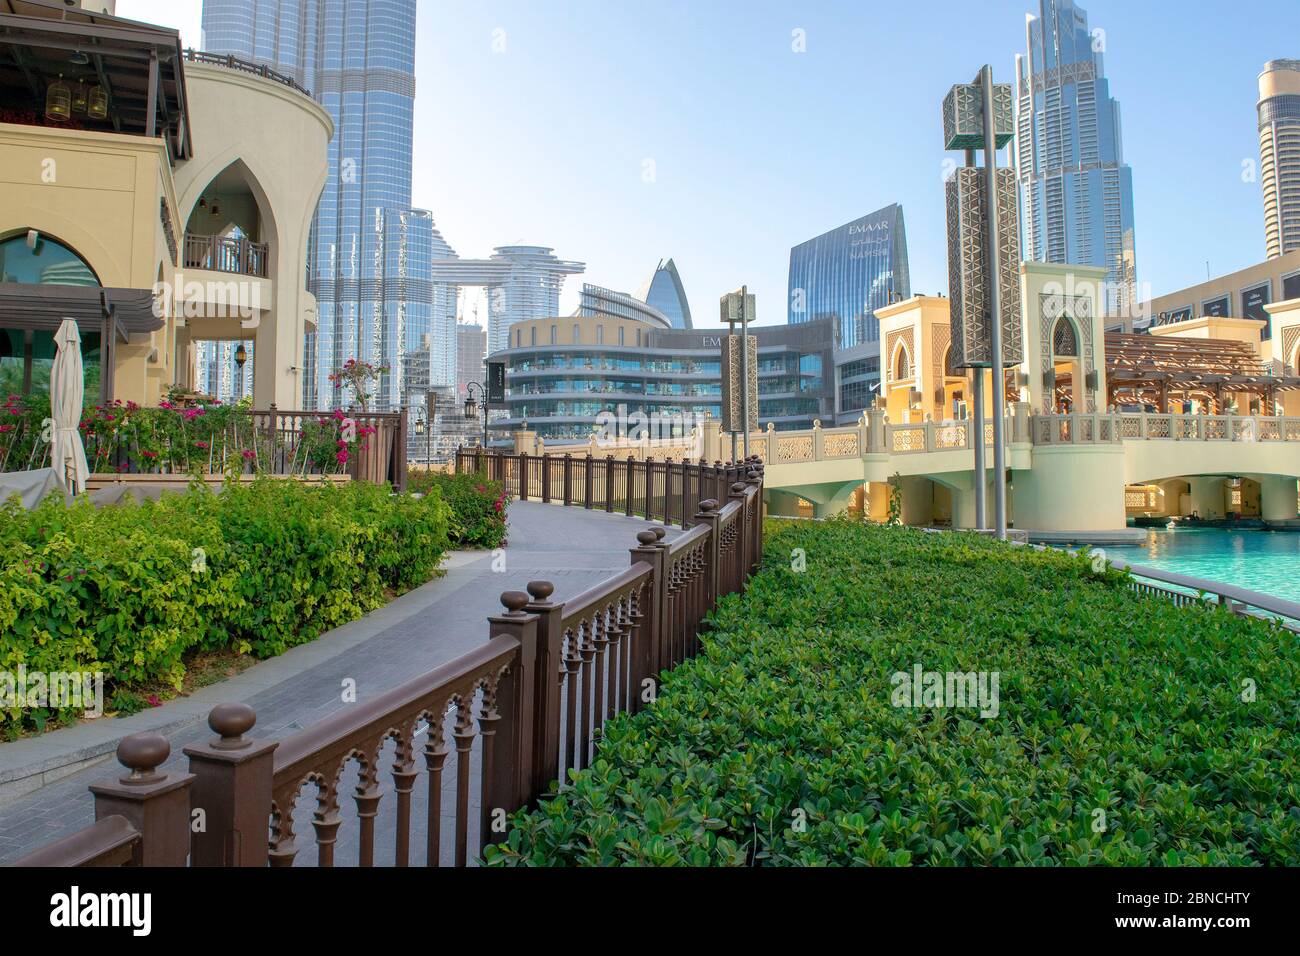 Dubaï / Émirats Arabes Unis - 12 mai 2020 : magnifique passage menant à Souk al Bahar, fontaine de Dubaï avec Burj Khalifa et pont du centre commercial de Dubaï. Banque D'Images